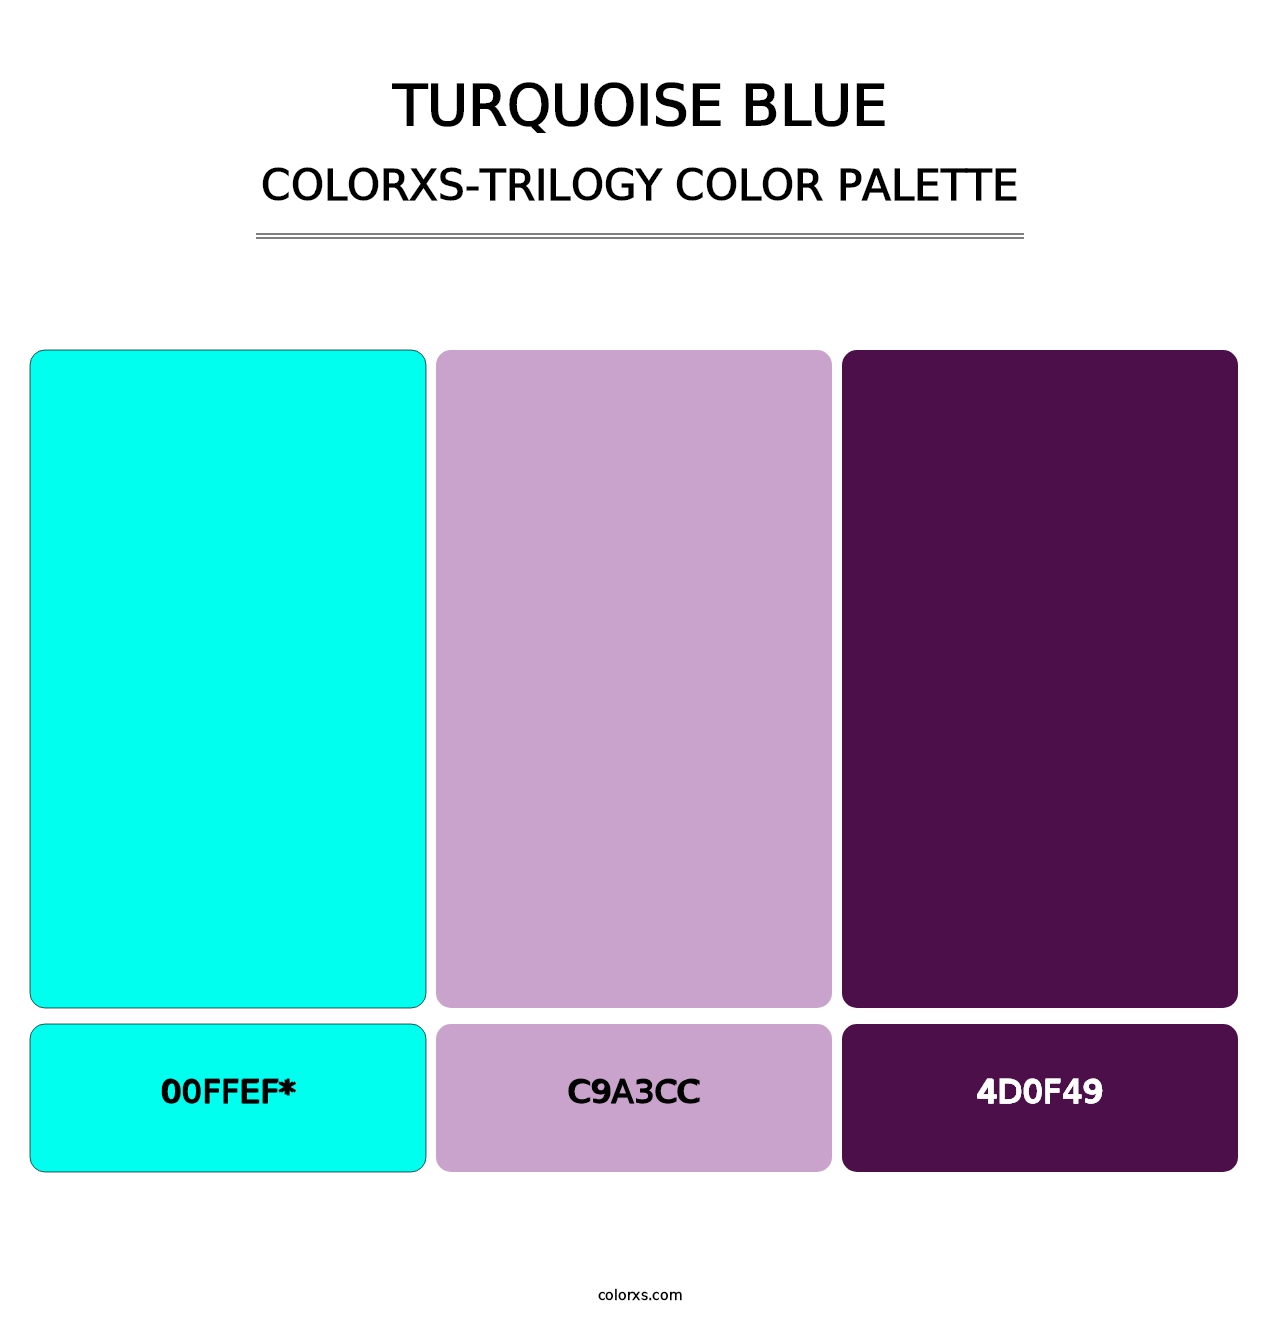 Turquoise Blue - Colorxs Trilogy Palette